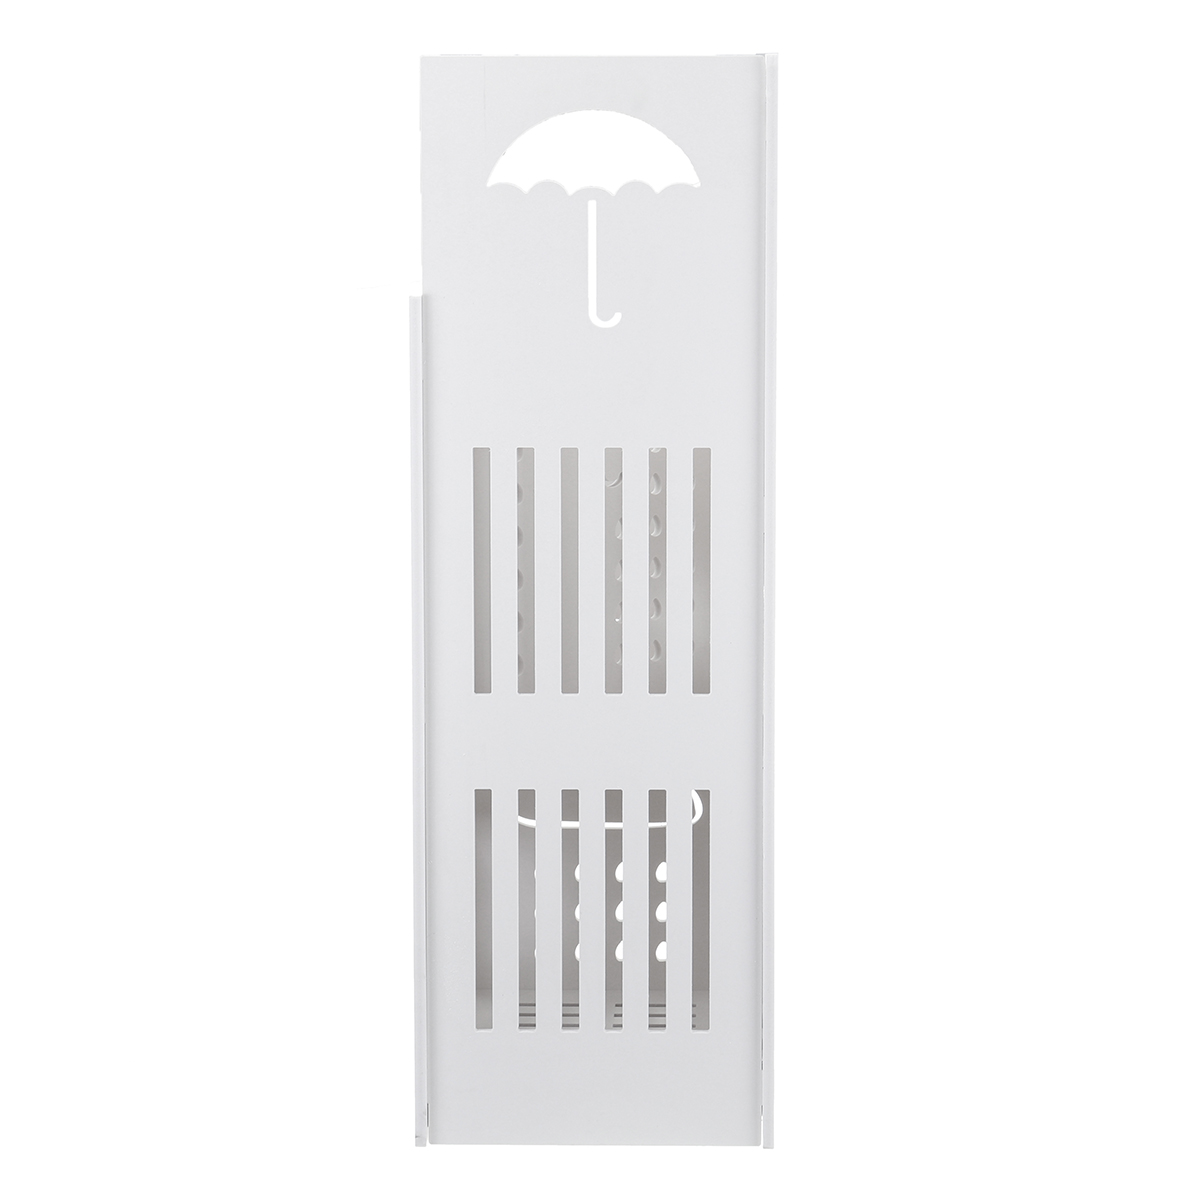 Multifunct-Hallway-Umbrella-Stand-Walking-Stick-Storage-Holder-Rack-Hook-Metal-Kitchen-Storage-Rack-1619601-1